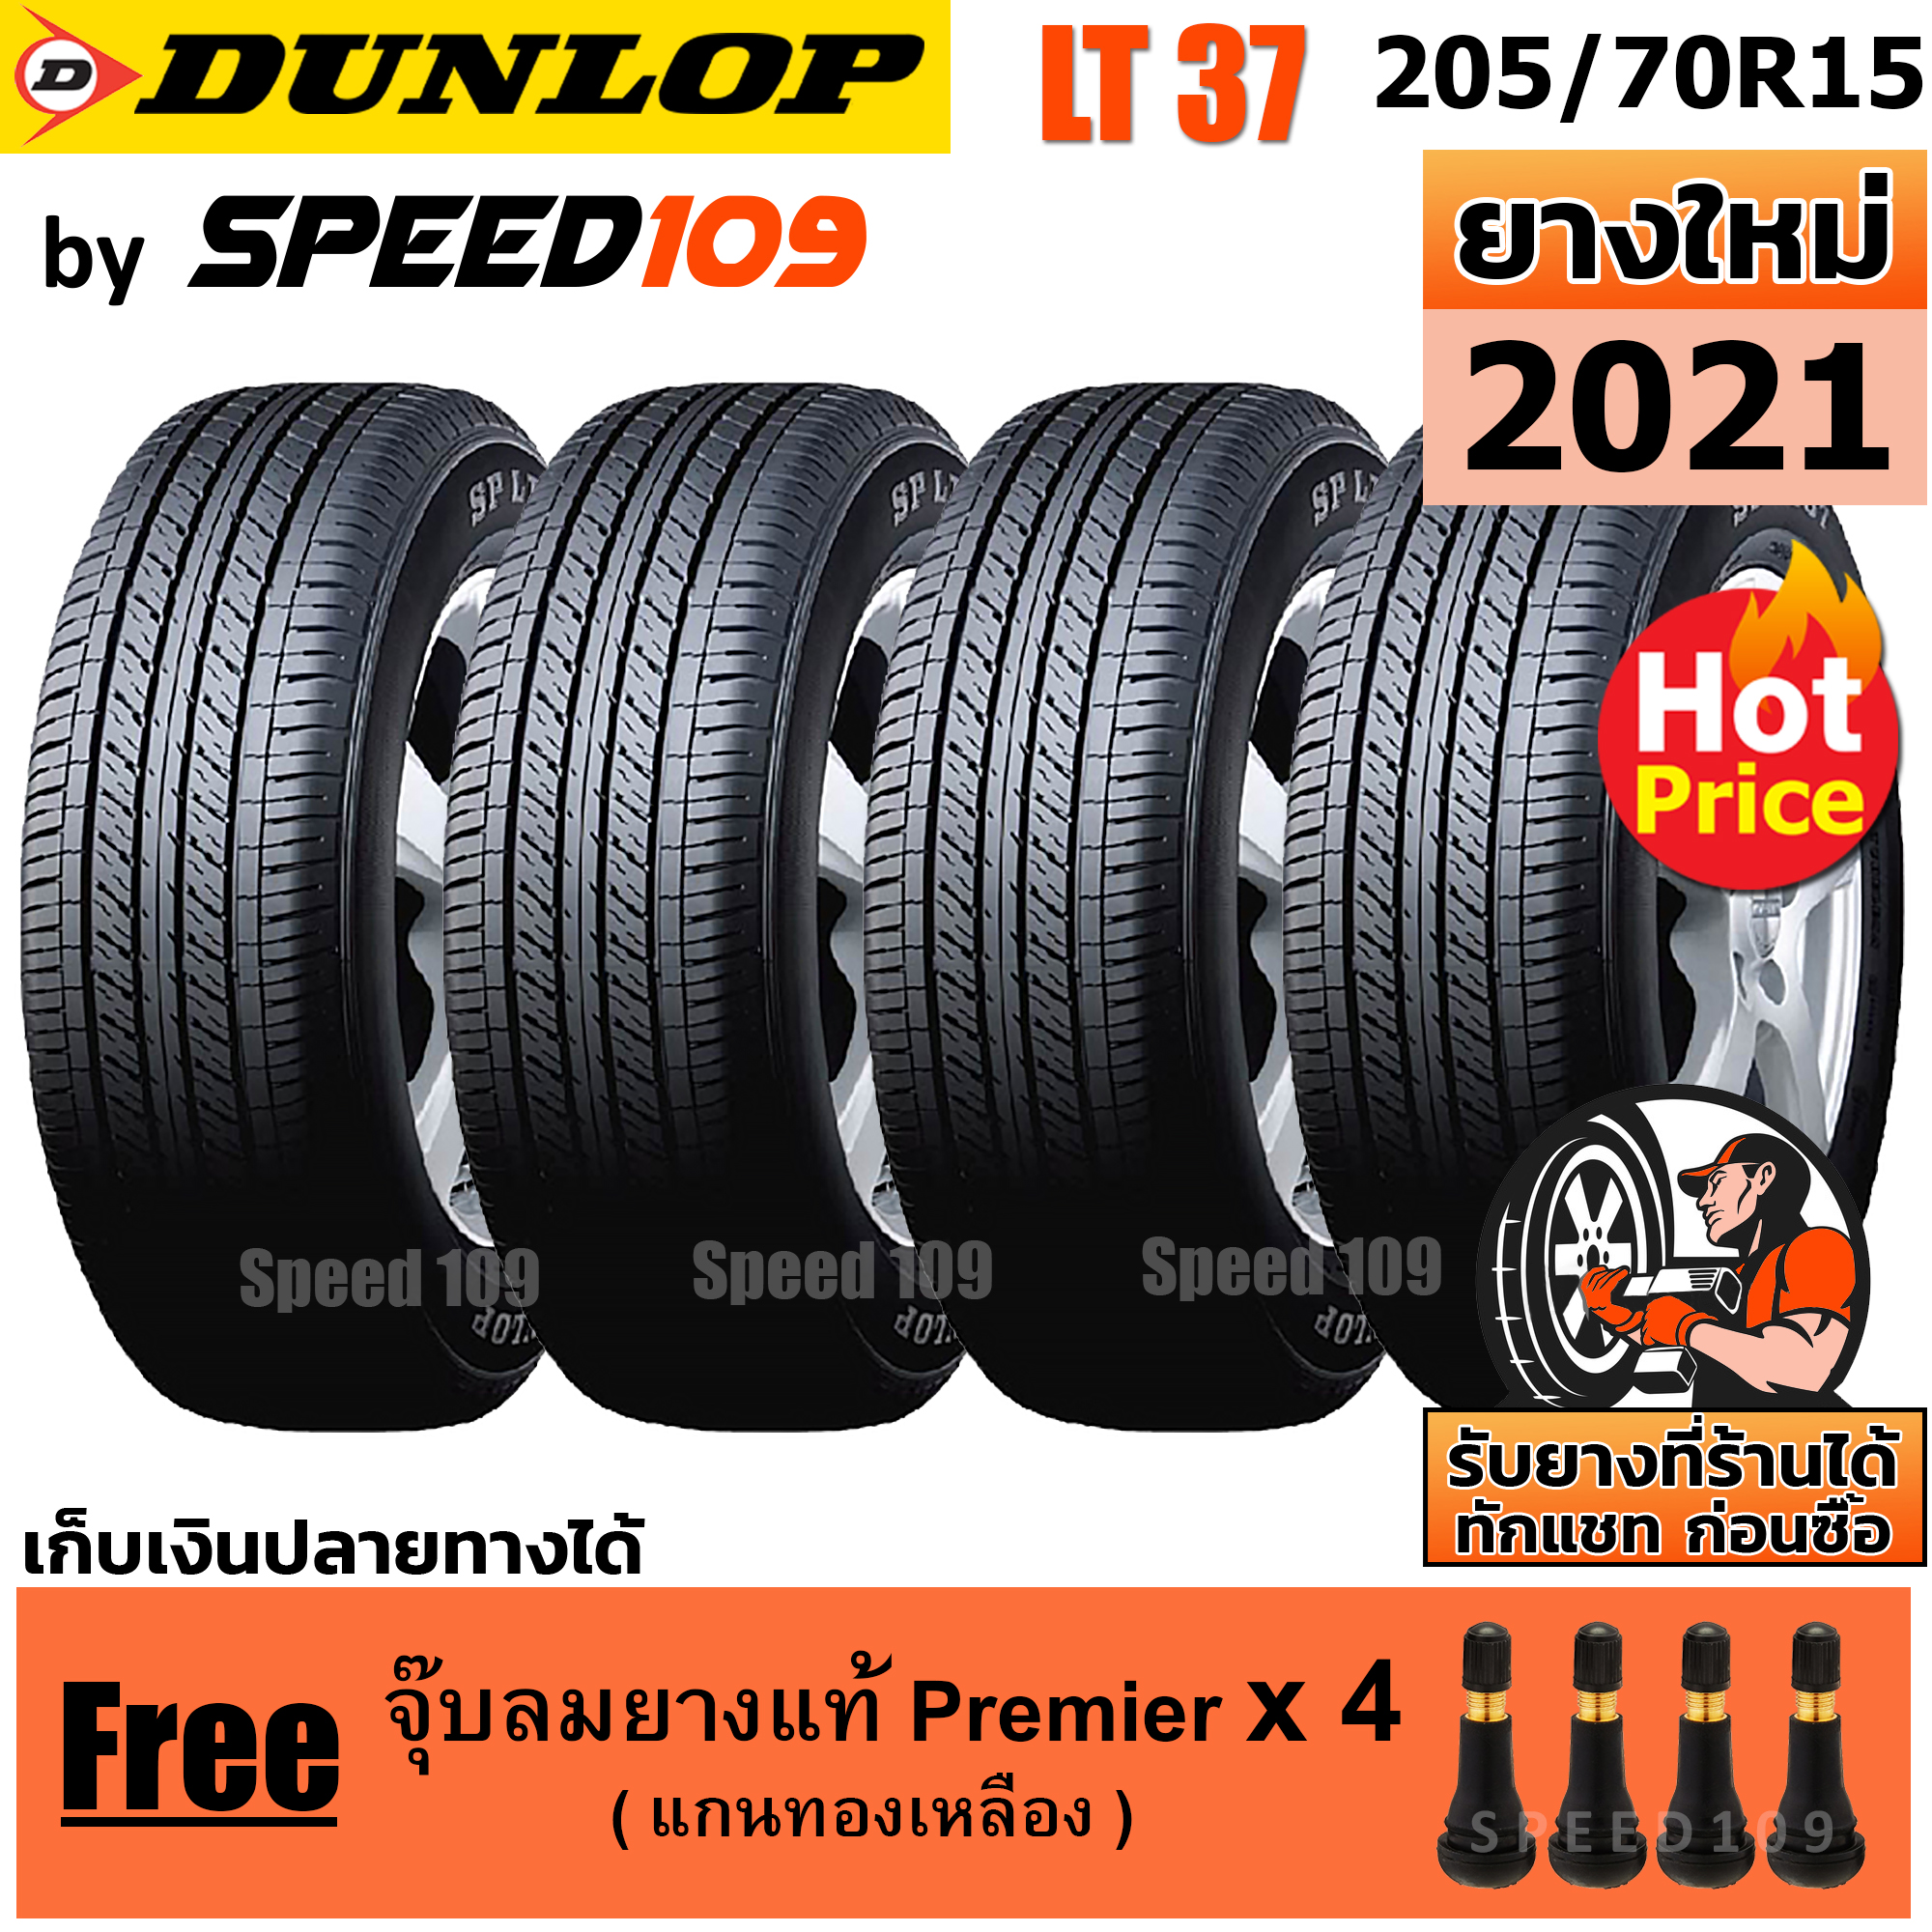 DUNLOP ยางรถยนต์ ขอบ 15 ขนาด 205/70R15 รุ่น SP LT37 - 4 เส้น (ปี 2021)